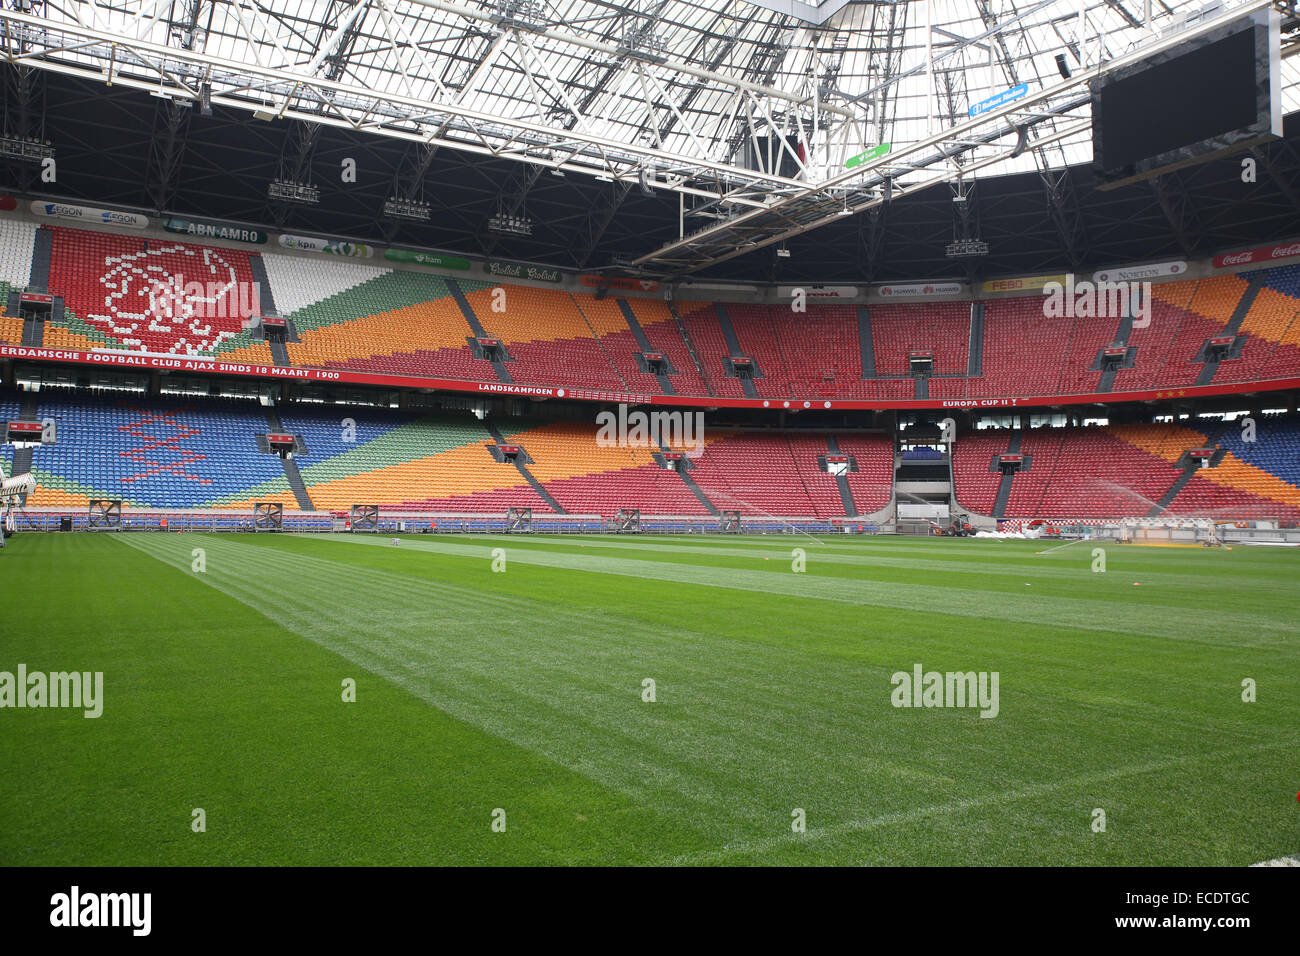 european football stadium empty Stock Photo